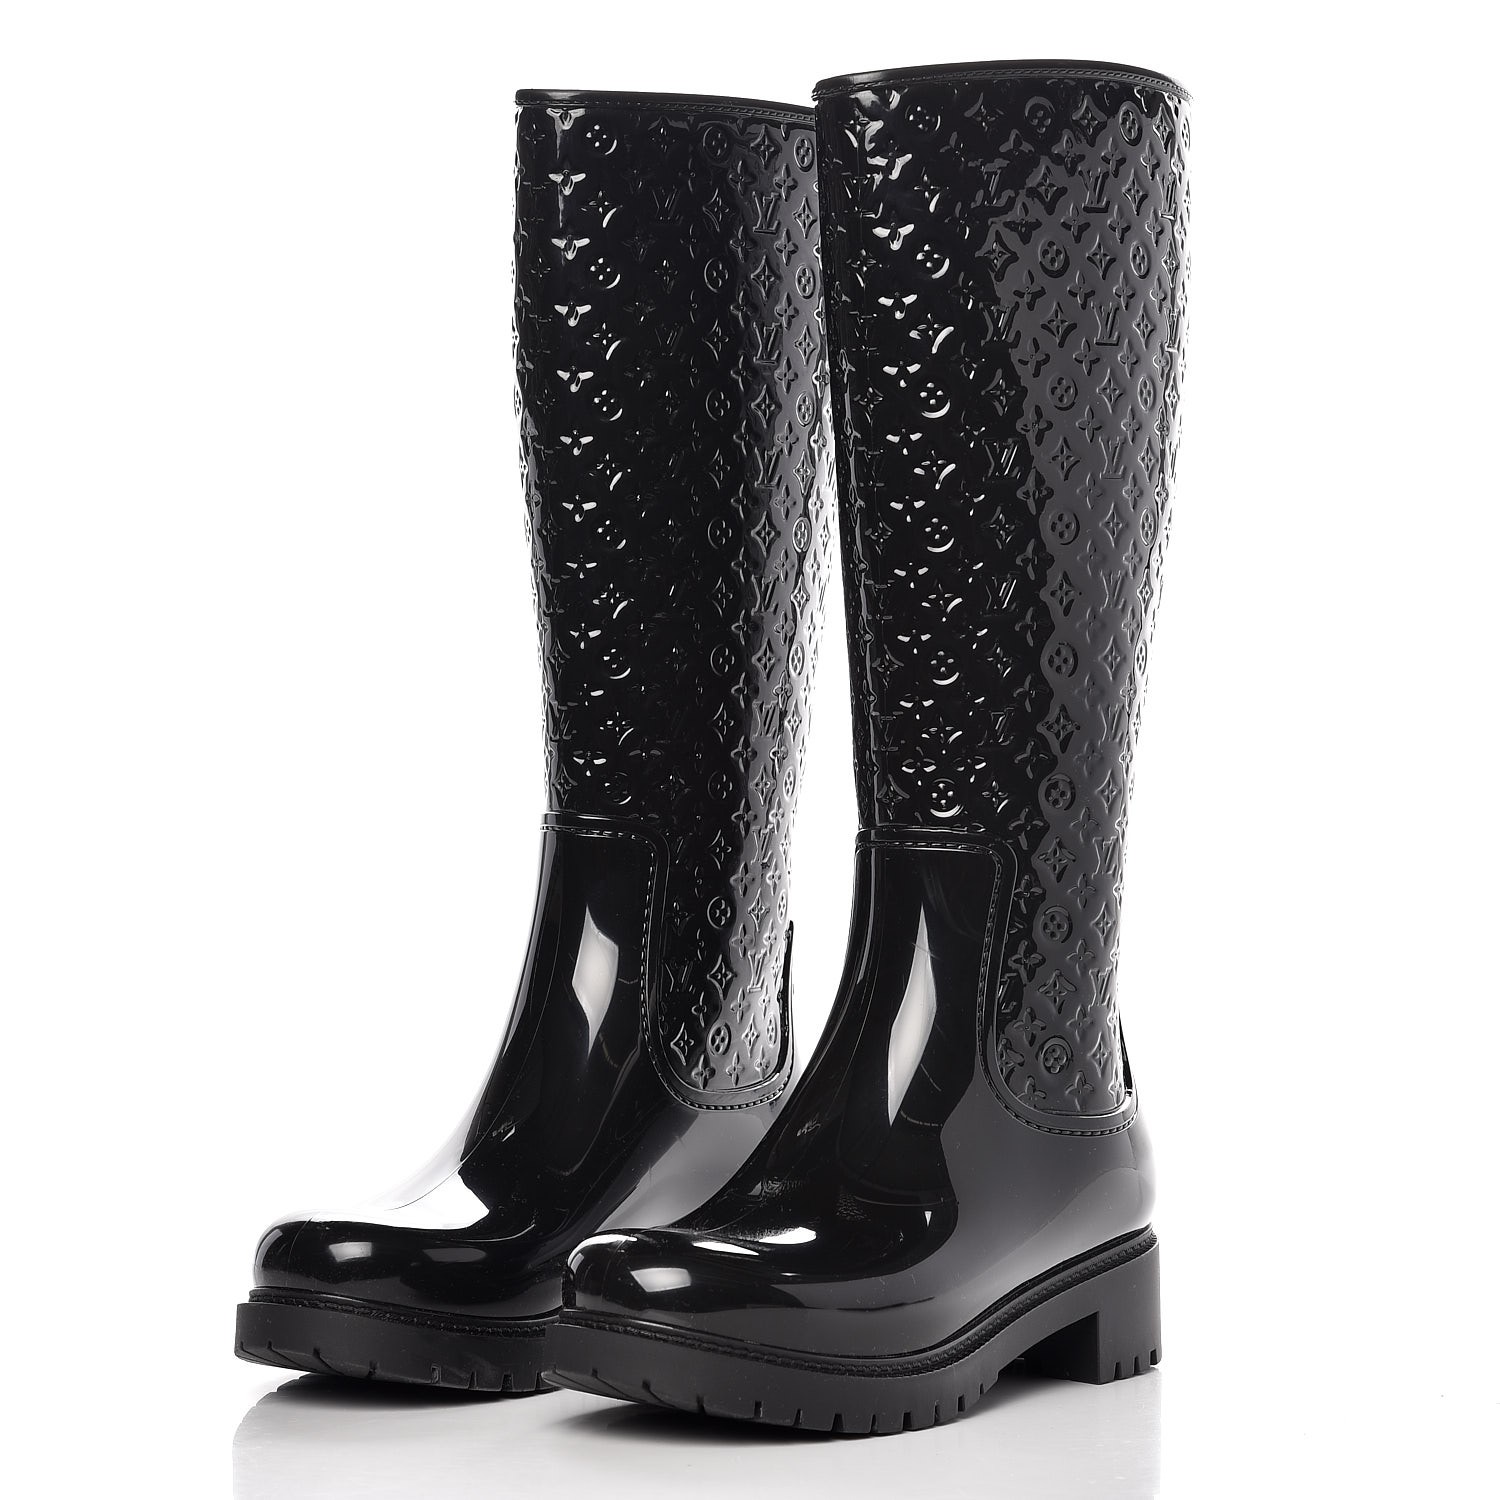 Drops wellington boots Louis Vuitton Black size 40 EU in Rubber